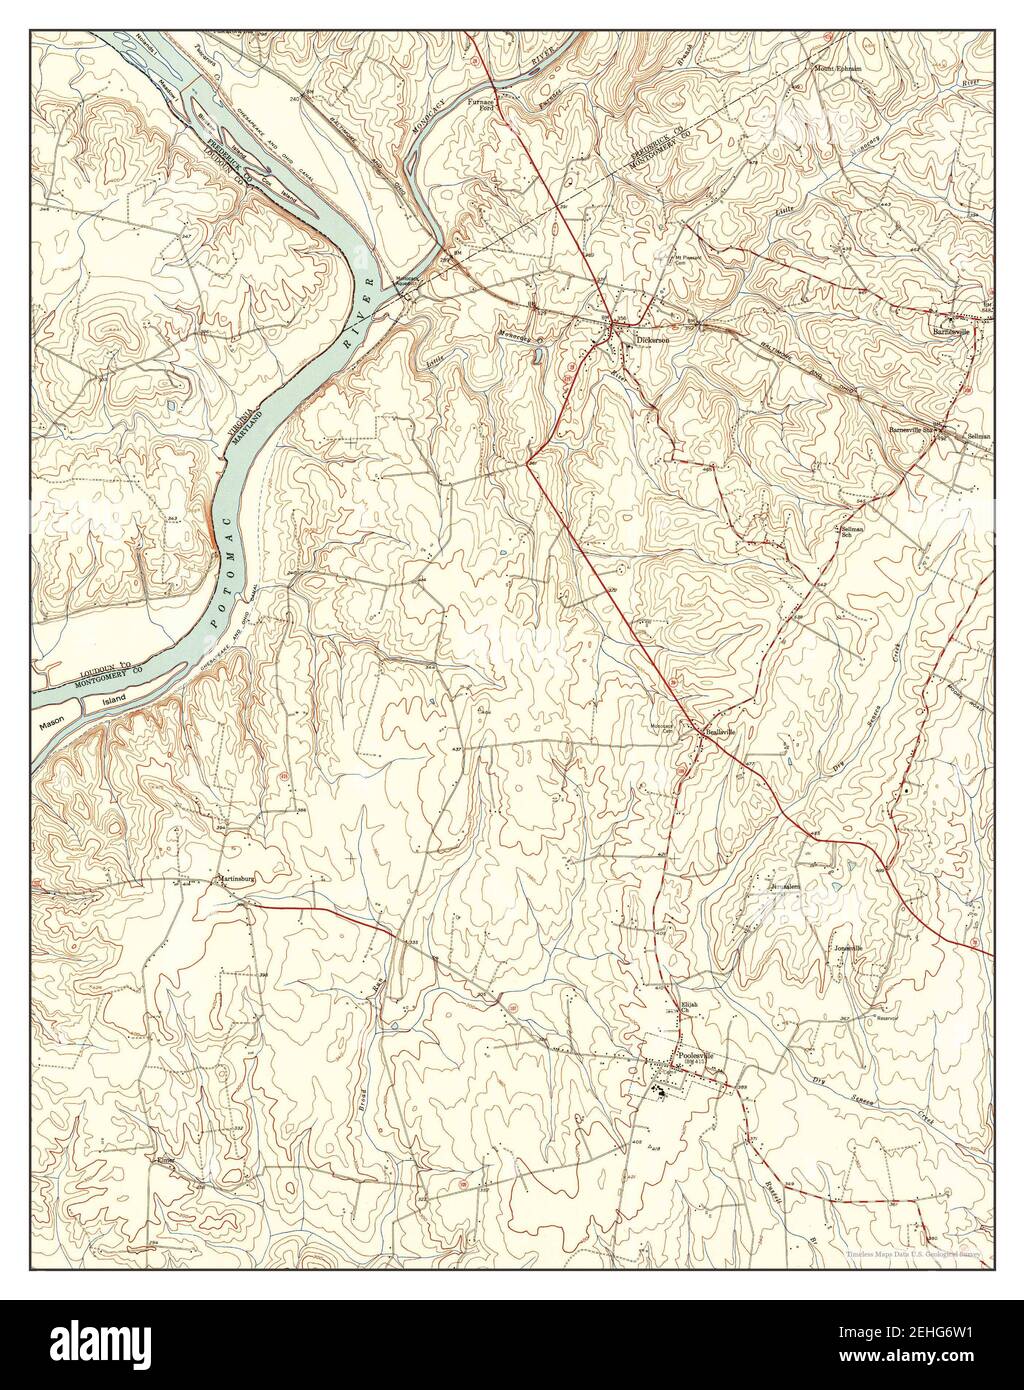 Poolesville, Maryland, Karte 1952, 1:24000, Vereinigte Staaten von Amerika von Timeless Maps, Daten U.S. Geological Survey Stockfoto